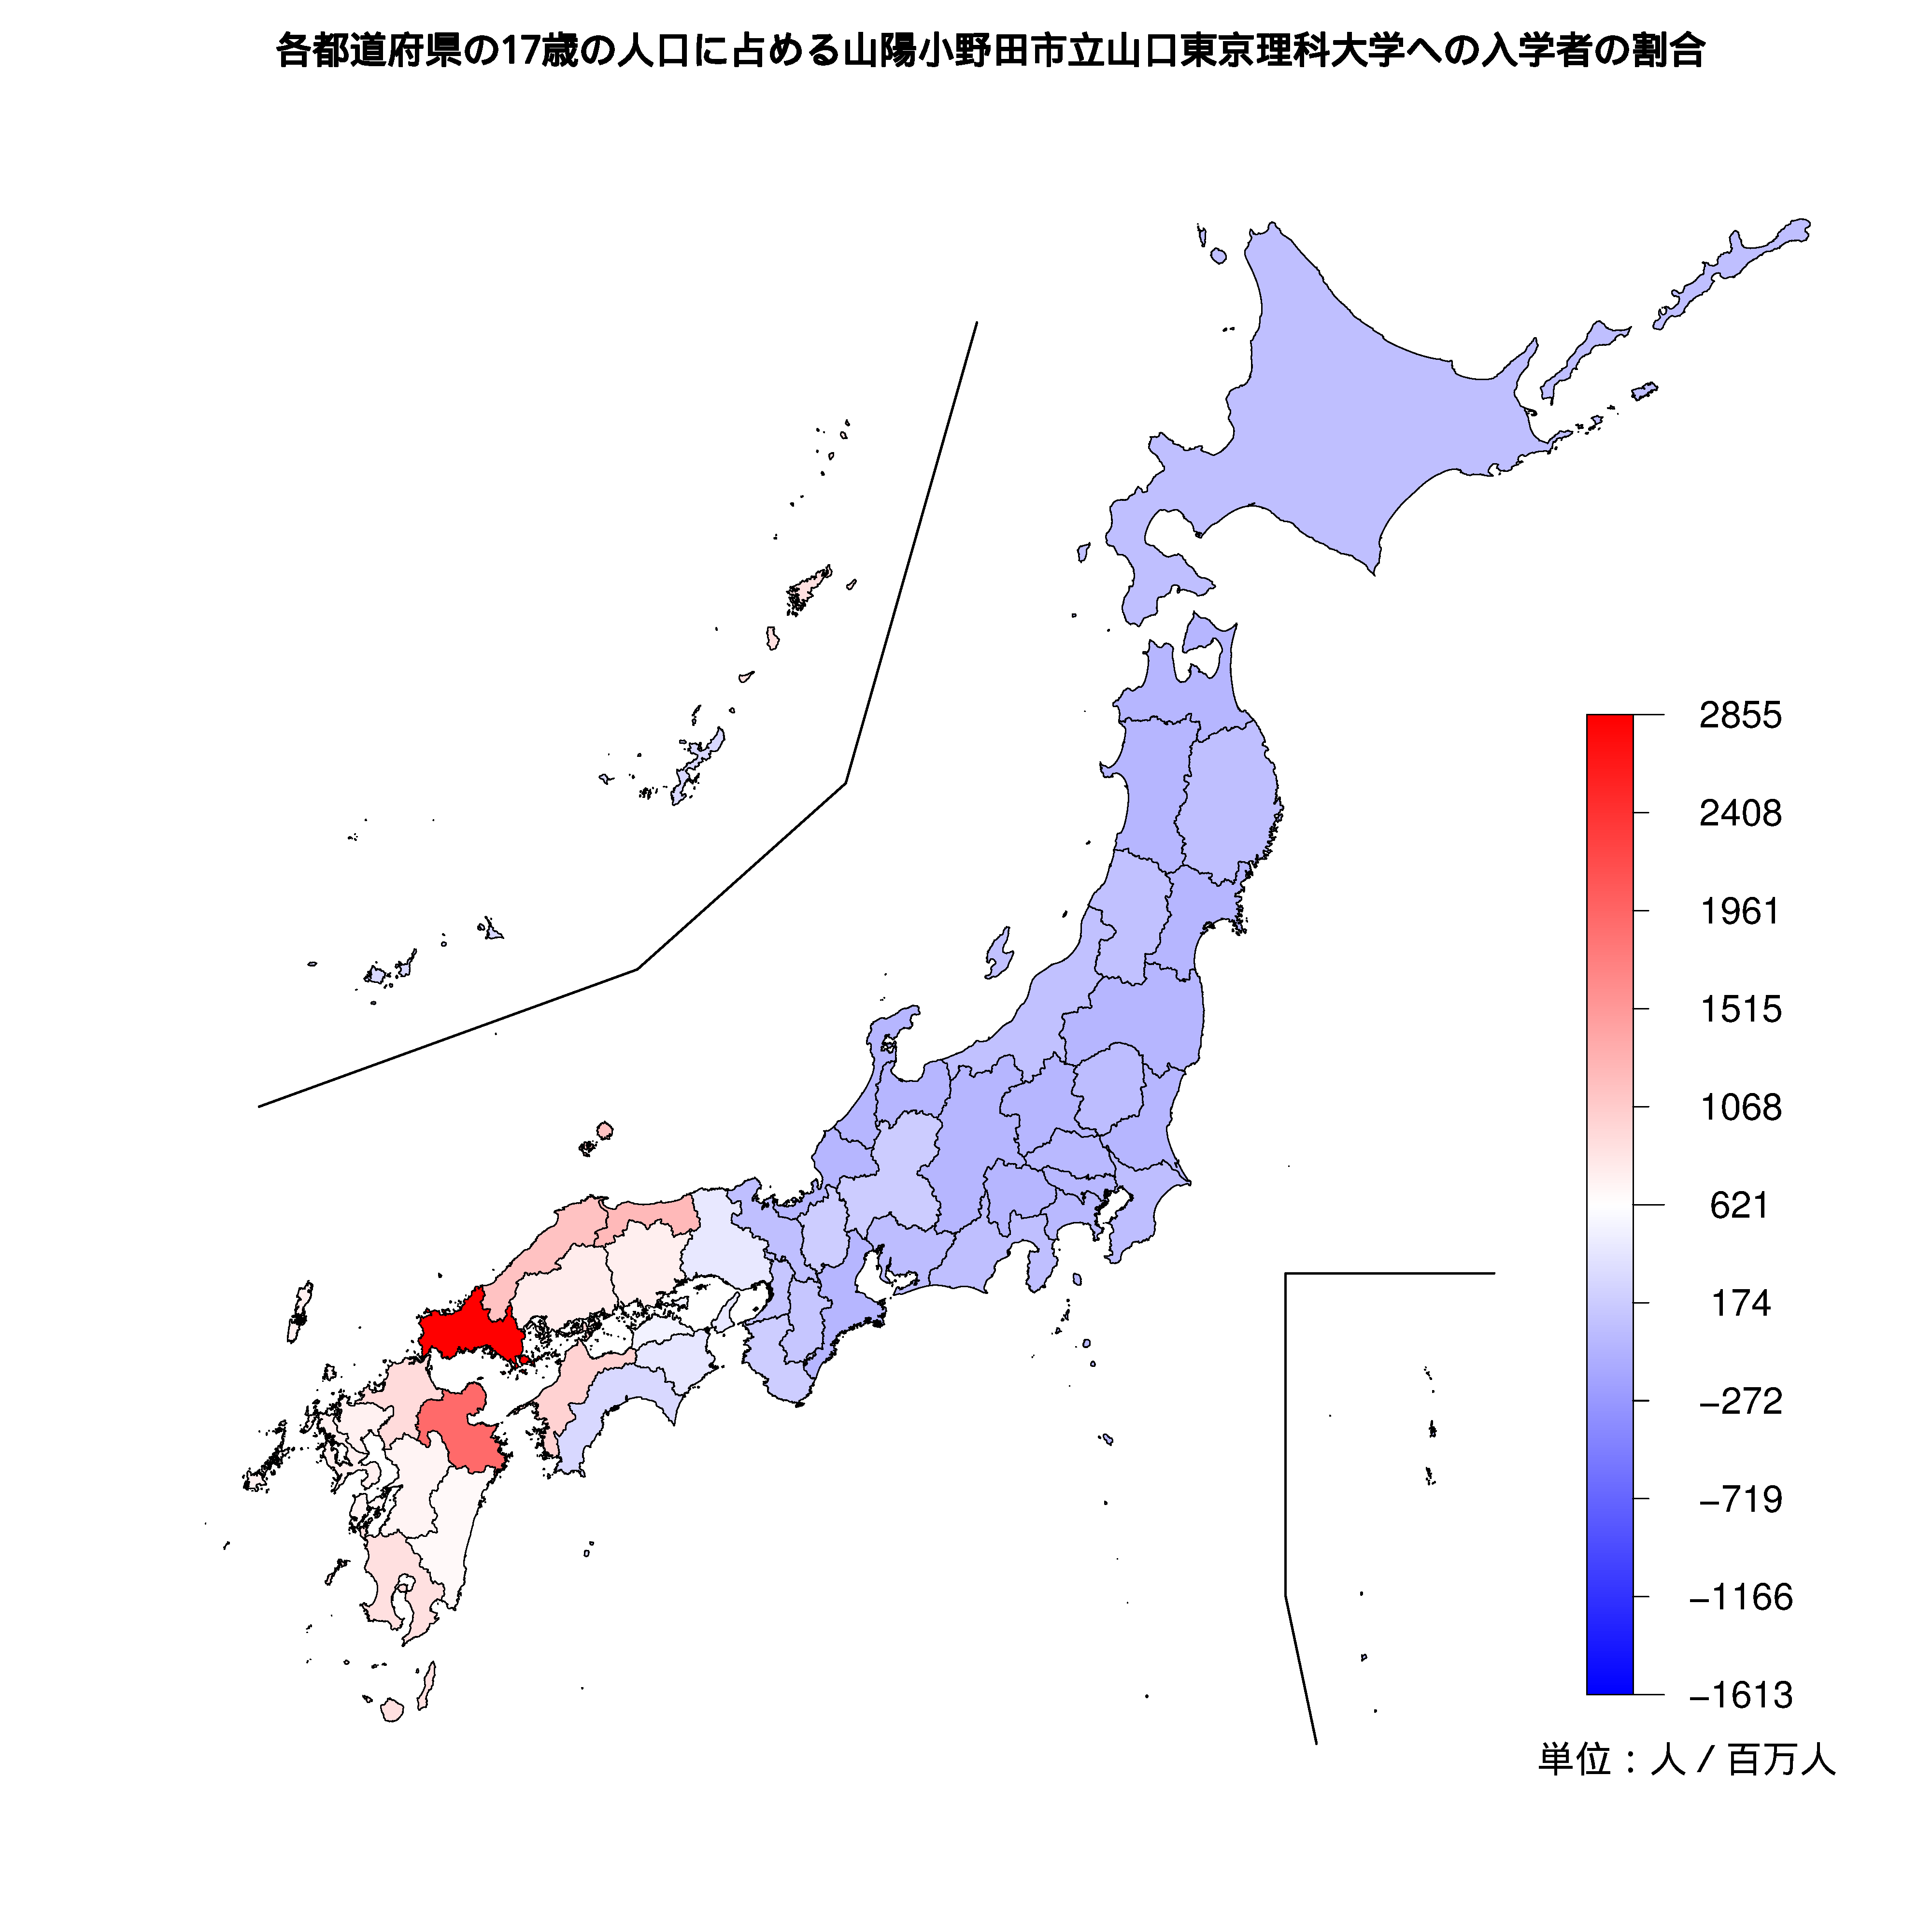 山陽小野田市立山口東京理科大学への入学者が多い都道府県の色分け地図